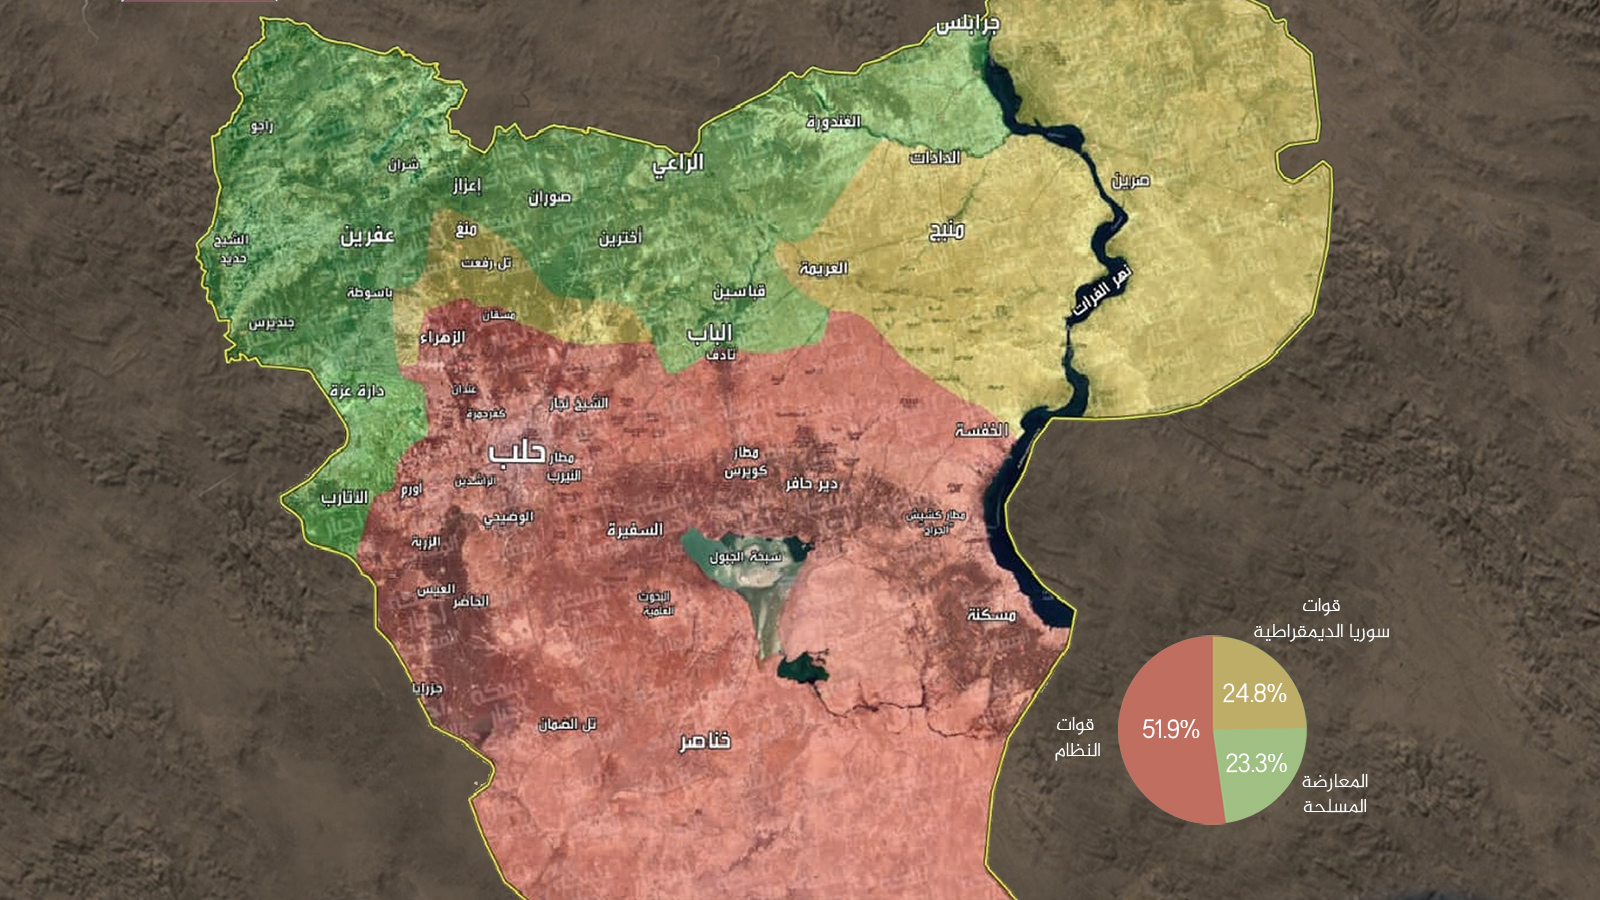 ‪خريطة السيطرة العسكرية في محافظة حلب‬ خريطة السيطرة العسكرية في محافظة حلب (مواقع التواصل الاجتماعي)